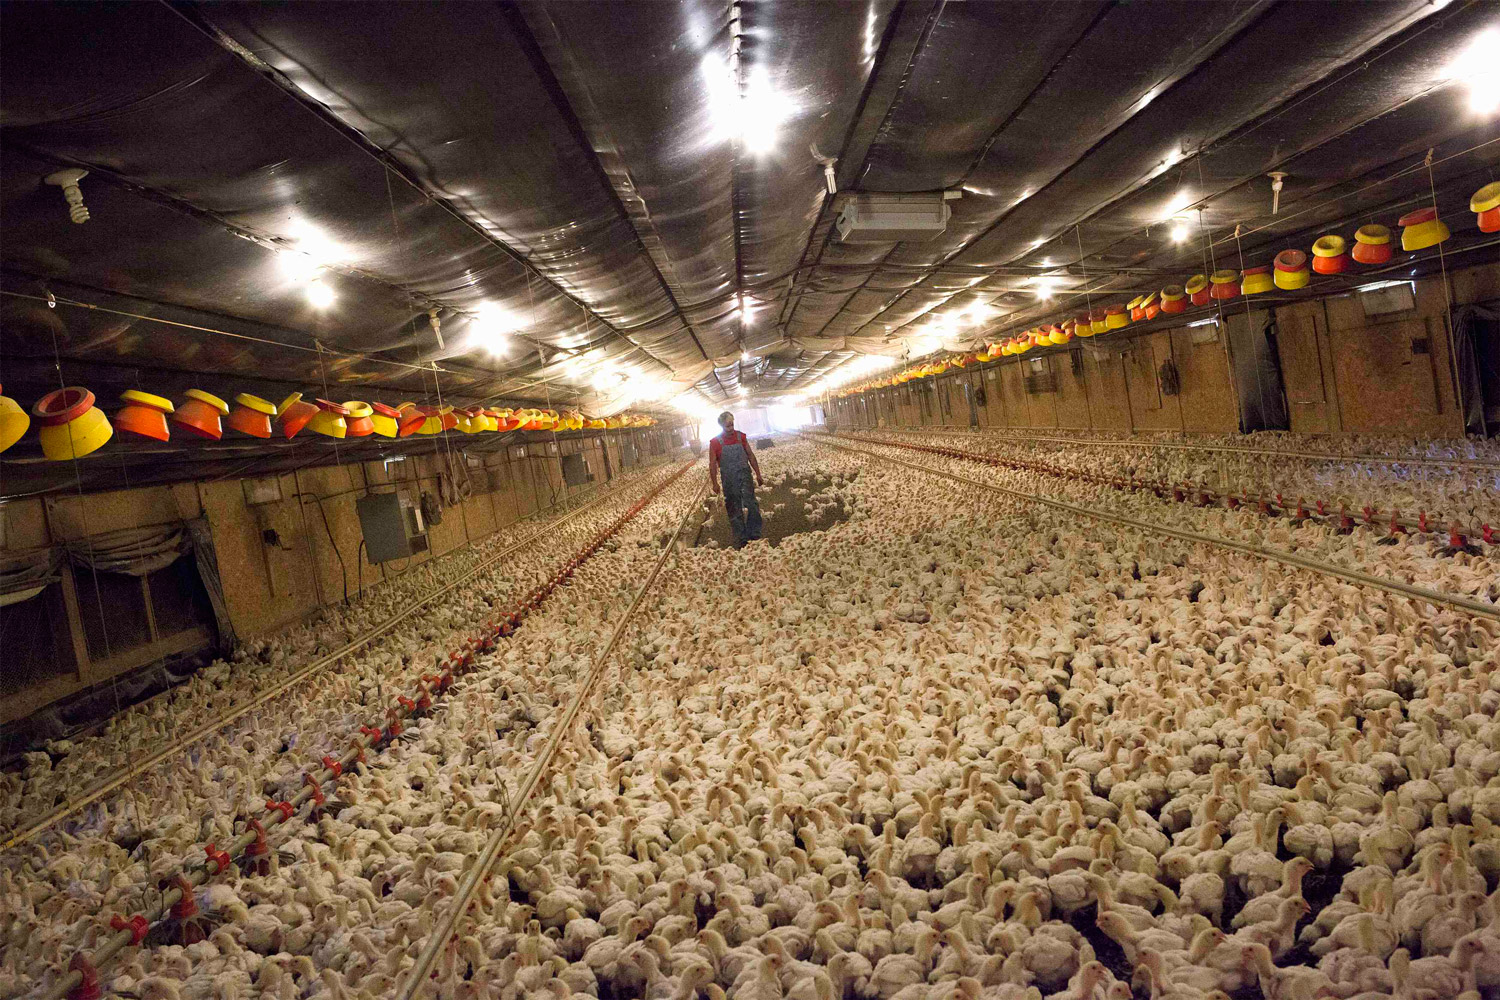 Sobredósis de antibióticos en las principales granjas avícolas de Estados Unidos